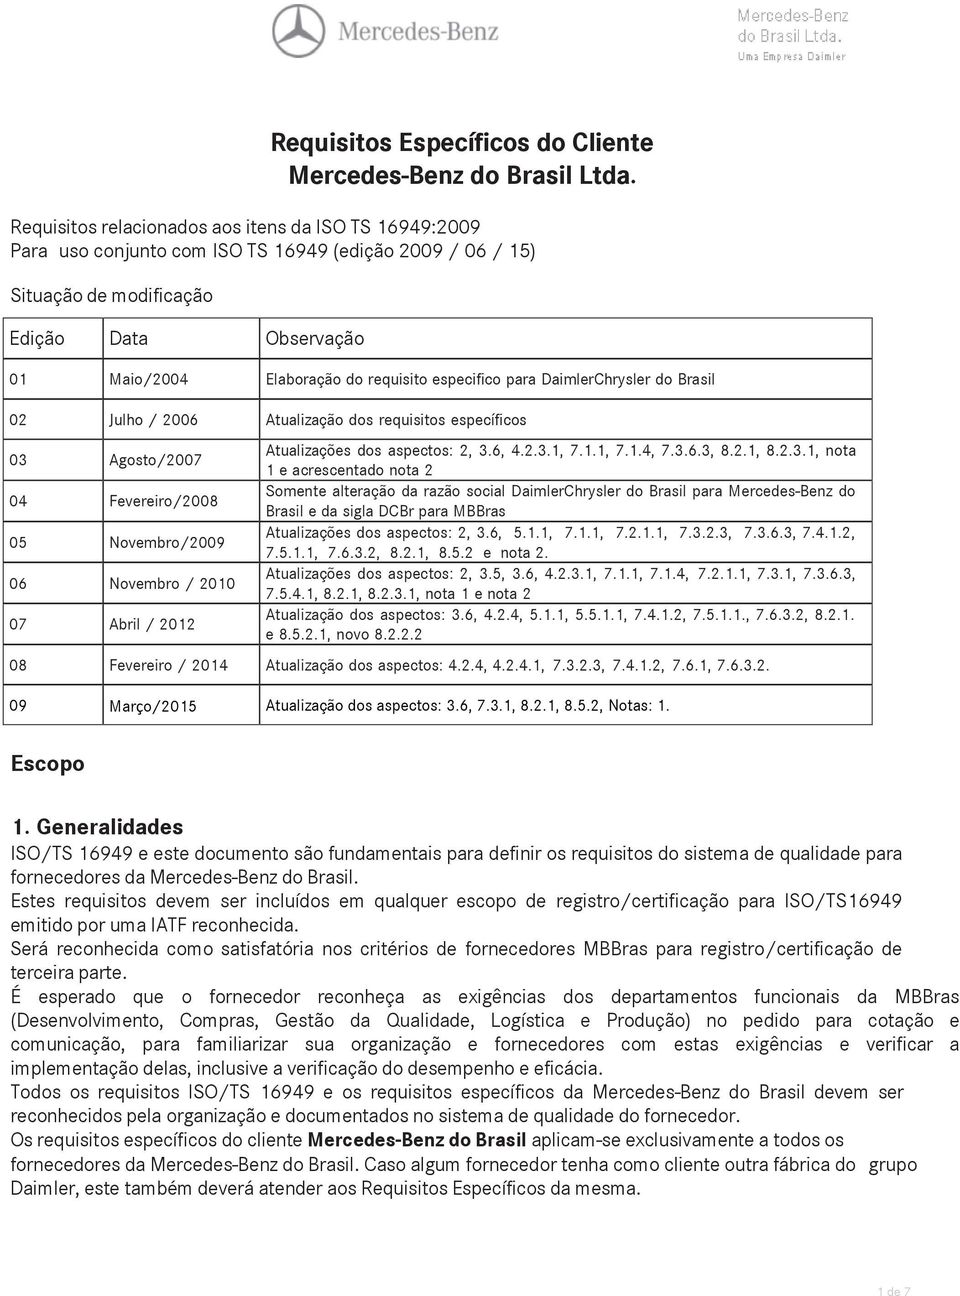 especifico para DaimlerChrysler do Brasil 02 Julho / 2006 Atualização dos requisitos específicos 03 Agosto/2007 04 Fevereiro/2008 05 Novembro/2009 06 Novembro / 2010 07 Abril / 2012 Atualizações dos